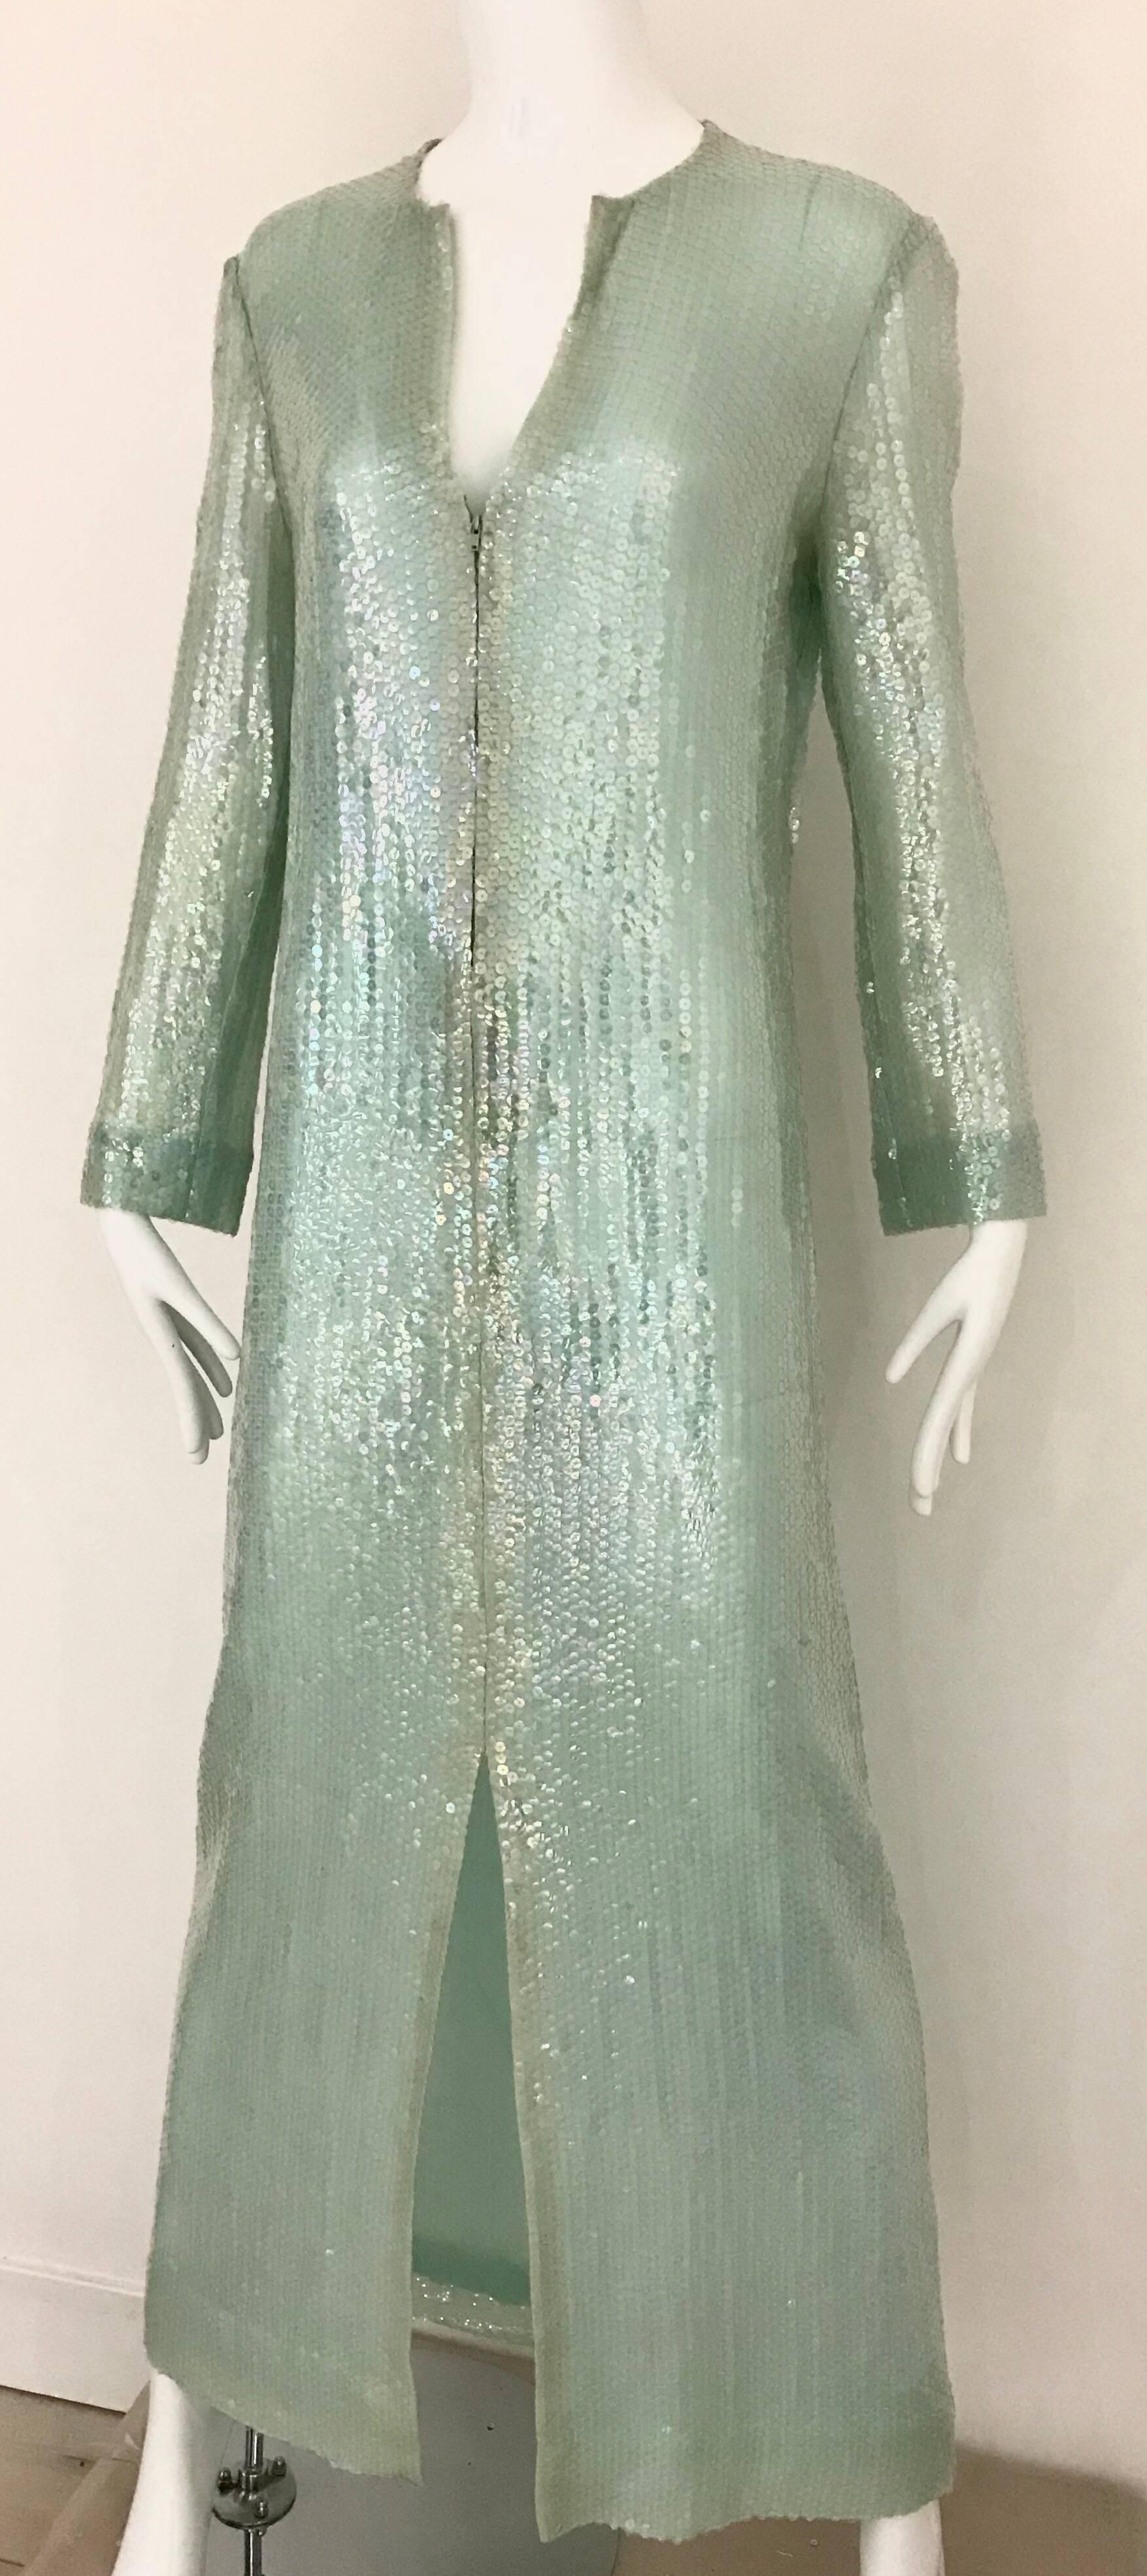 Vintage 70s Halston hellgrün schillernden Pailletten Kaftan Kleid mit Reißverschluss und Gürtel.
Das Kleid hat einen Reißverschluss in der Mitte und einen dünnen Gürtel. Größe 6/ Mittel
Büste: 38 Zoll/ Taille: 34 Zoll/ Hüfte: 37 Zoll Kleidlänge: 57